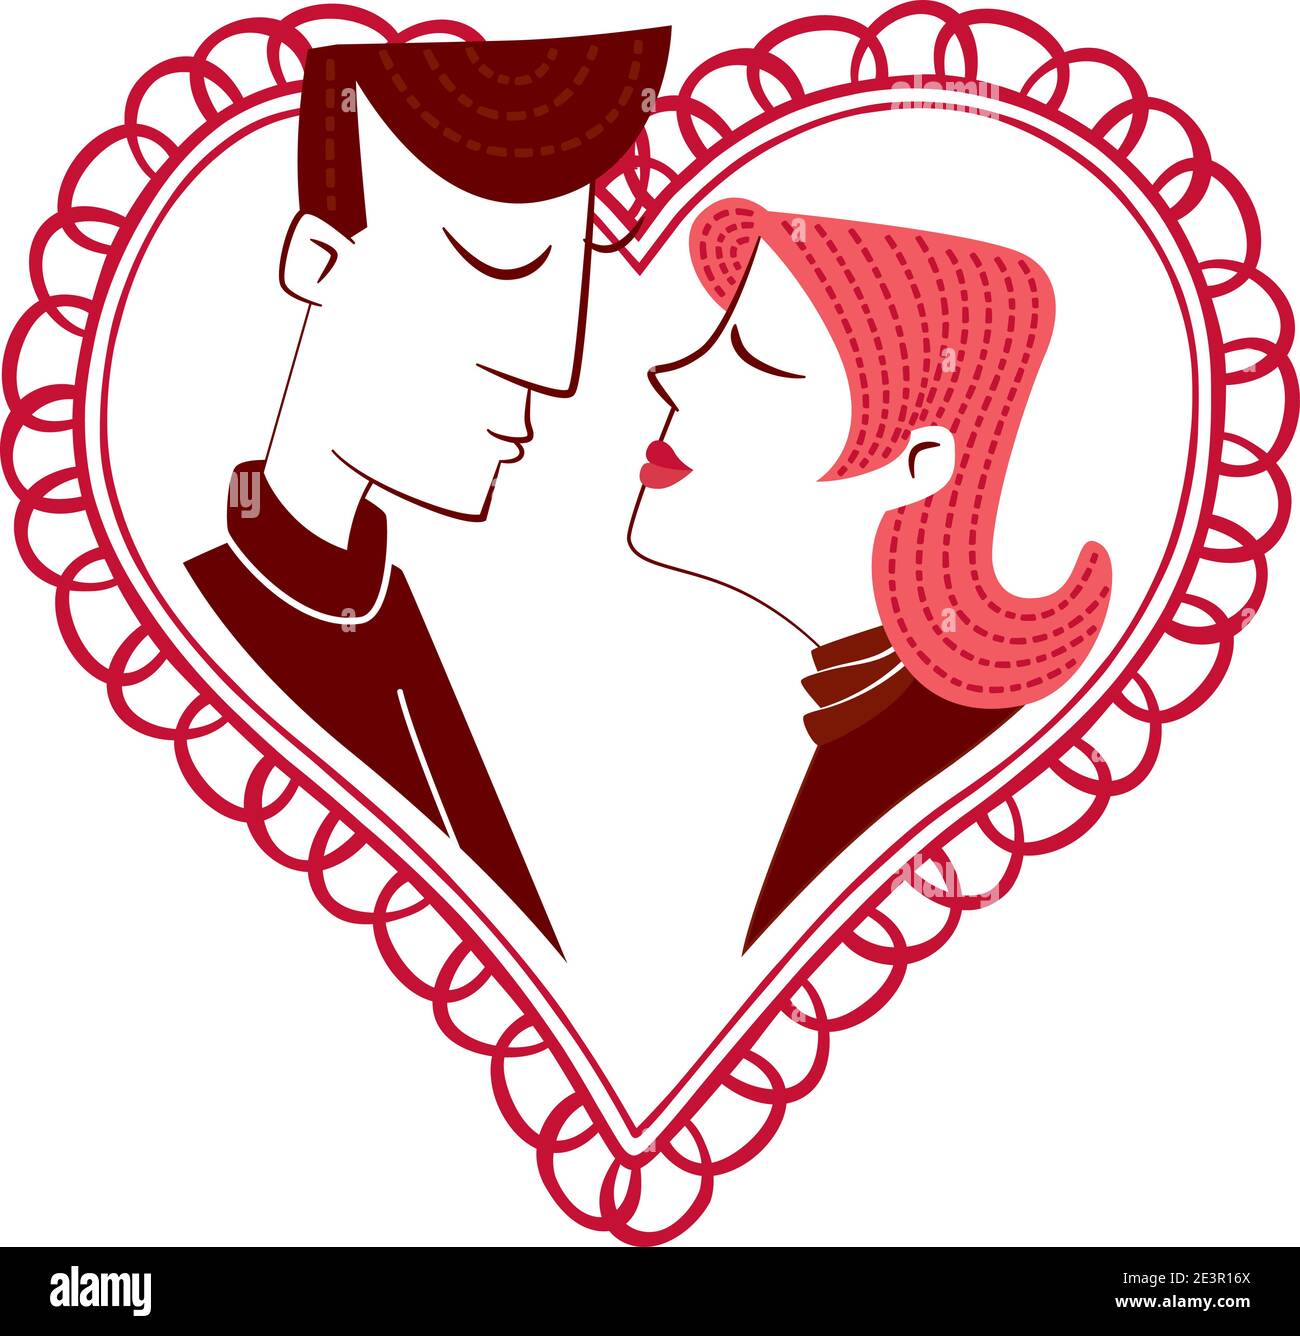 Ein Junge und ein Mädchen küssen sich auf einem herzförmigen Hintergrund. Stock Vektor